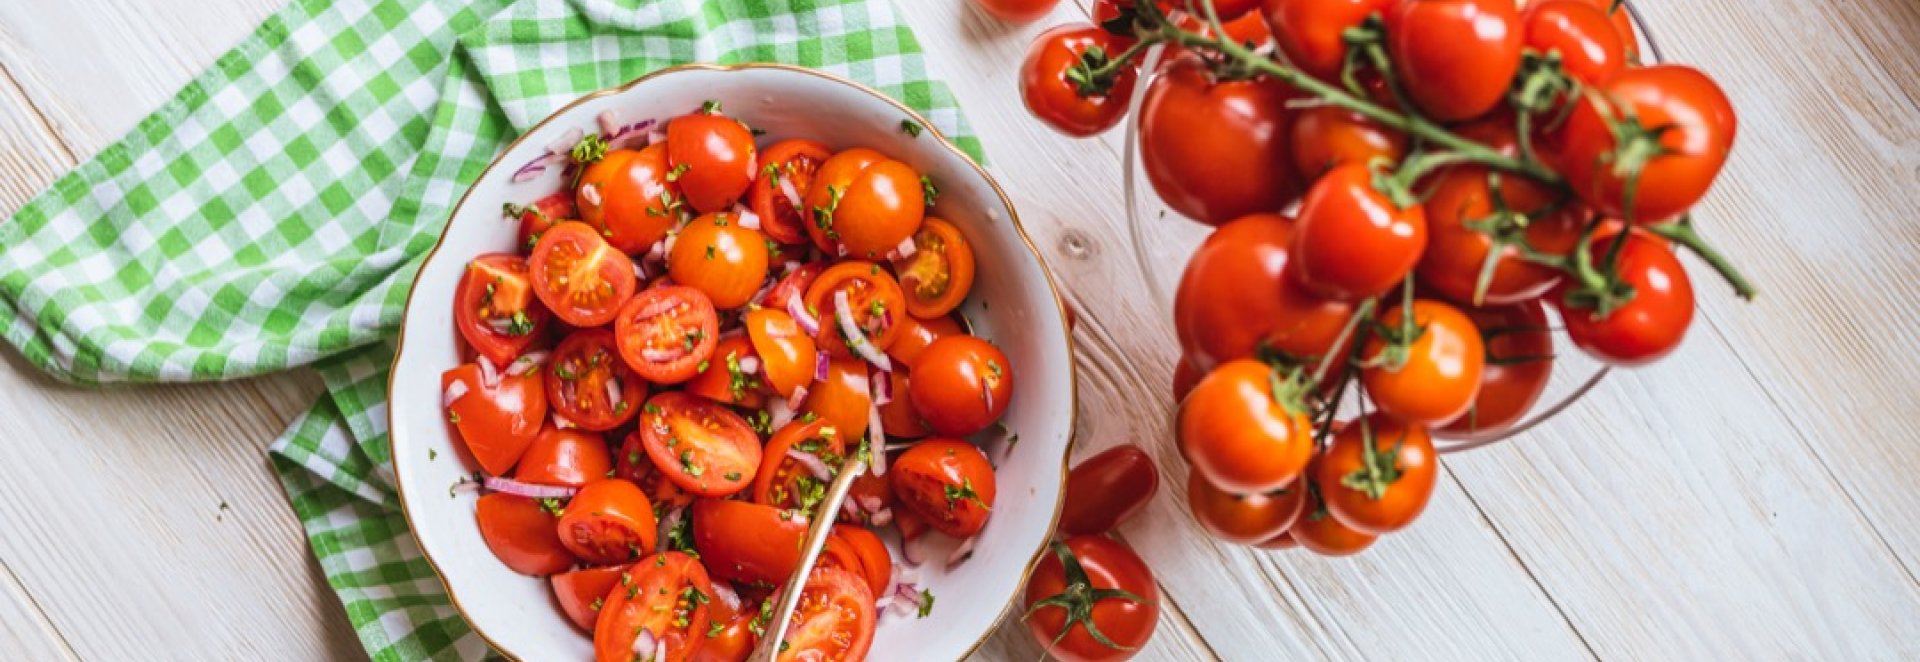 Rajčata – oblíbená zelenina s antioxidačními účinky